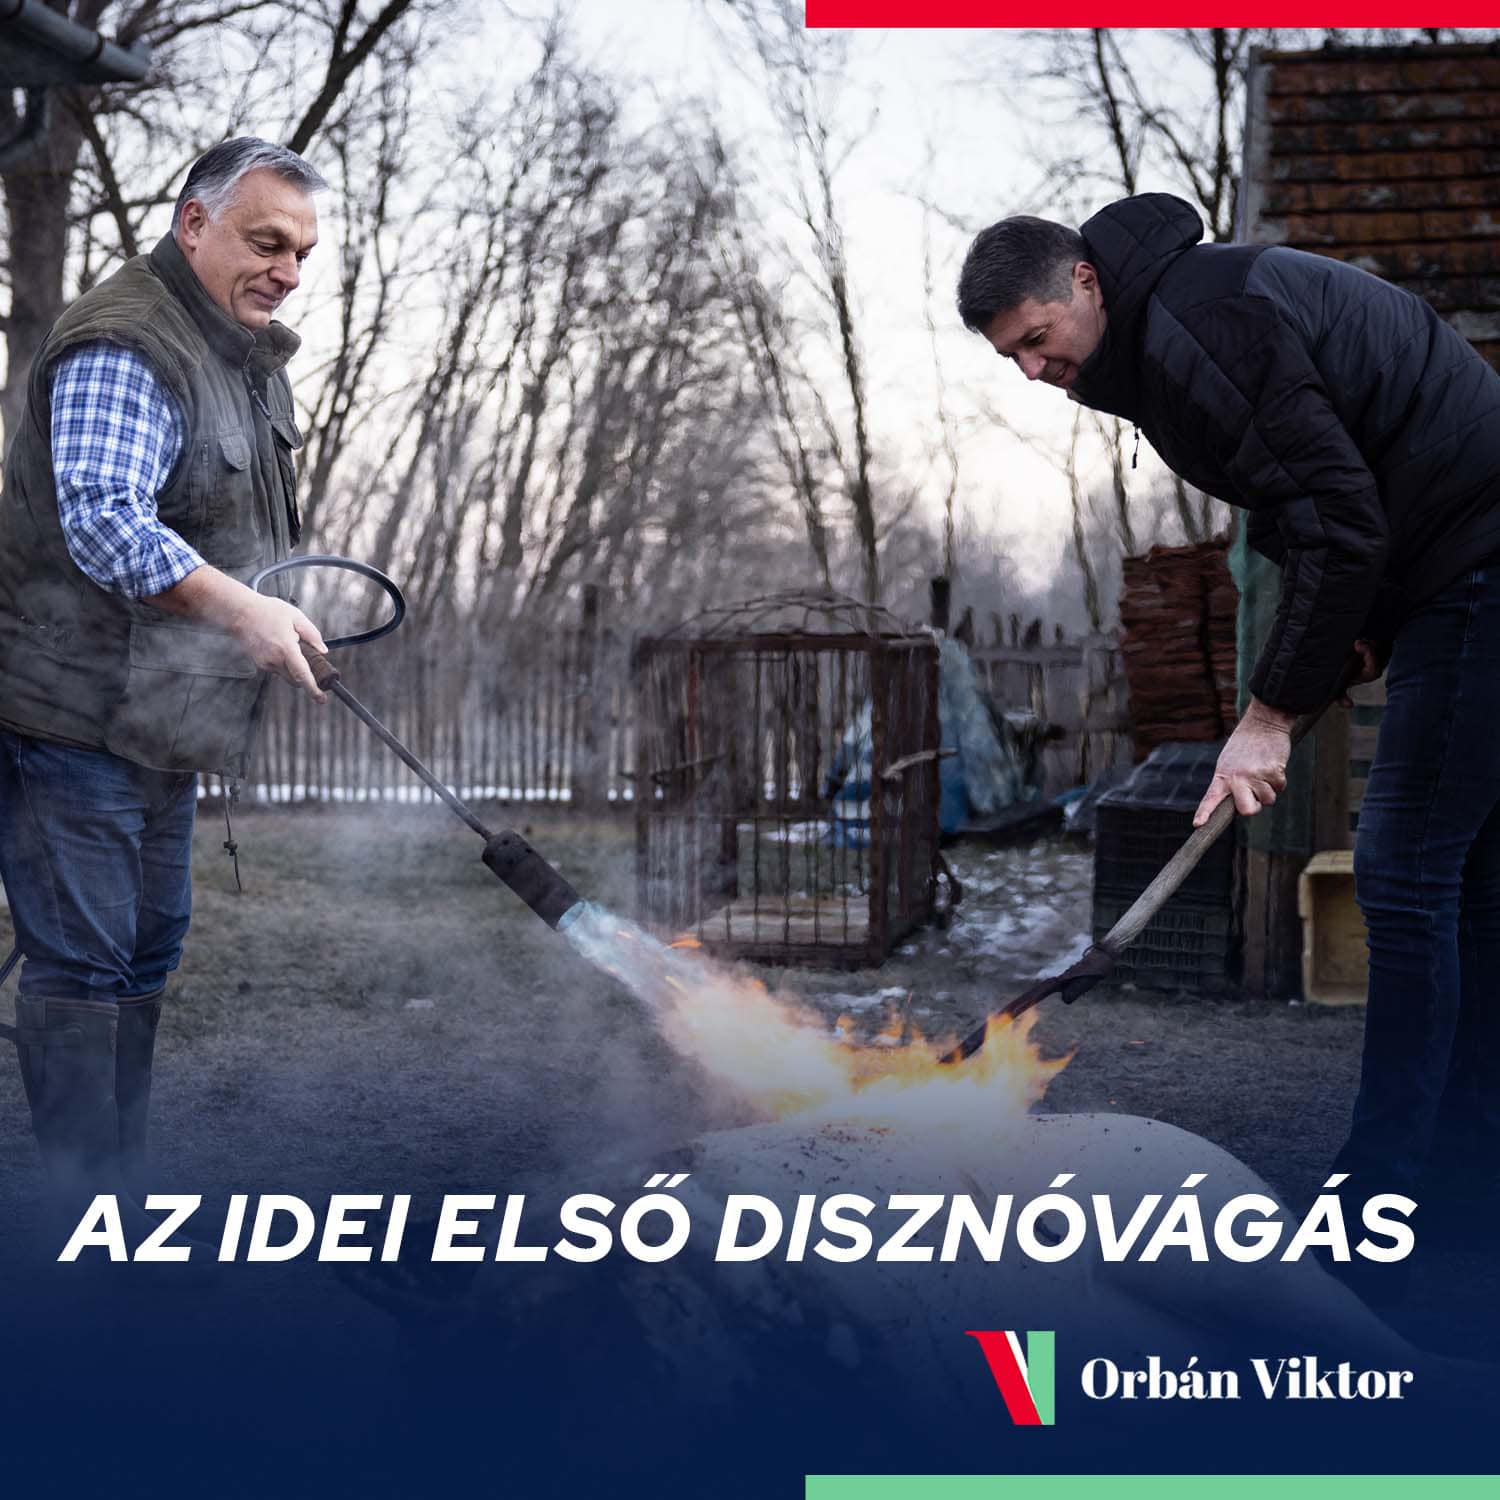 Orbán disznót vág – mi meg ehetjük a csirkefarhátat